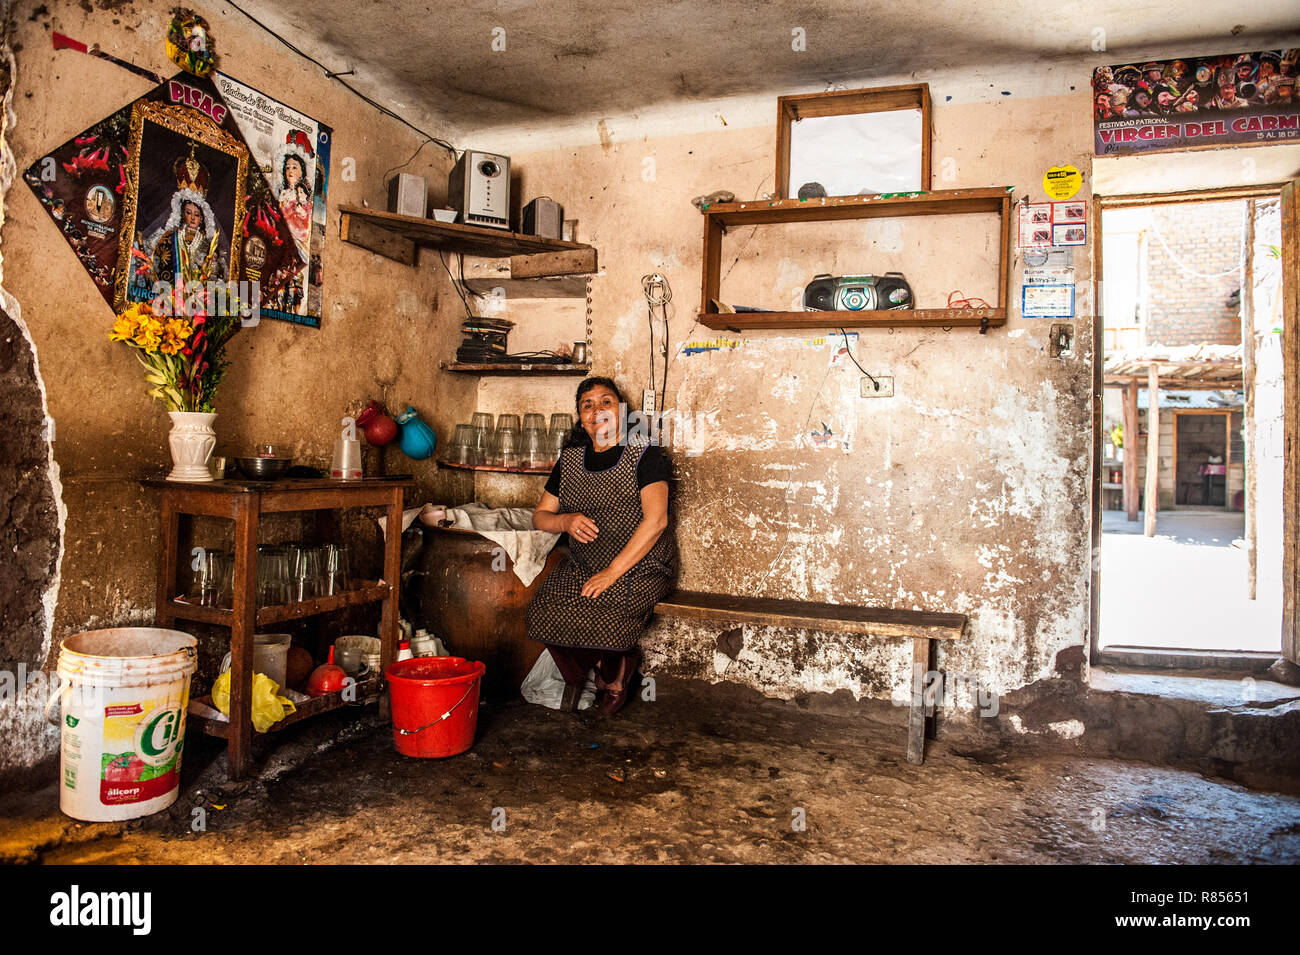 Le donne stanno preparando chicha in Chicheria è il posto in casa, in una stanza inutilizzata dove la gente locale sta bevendo birra rinfrescante chicha- Inca. Foto Stock